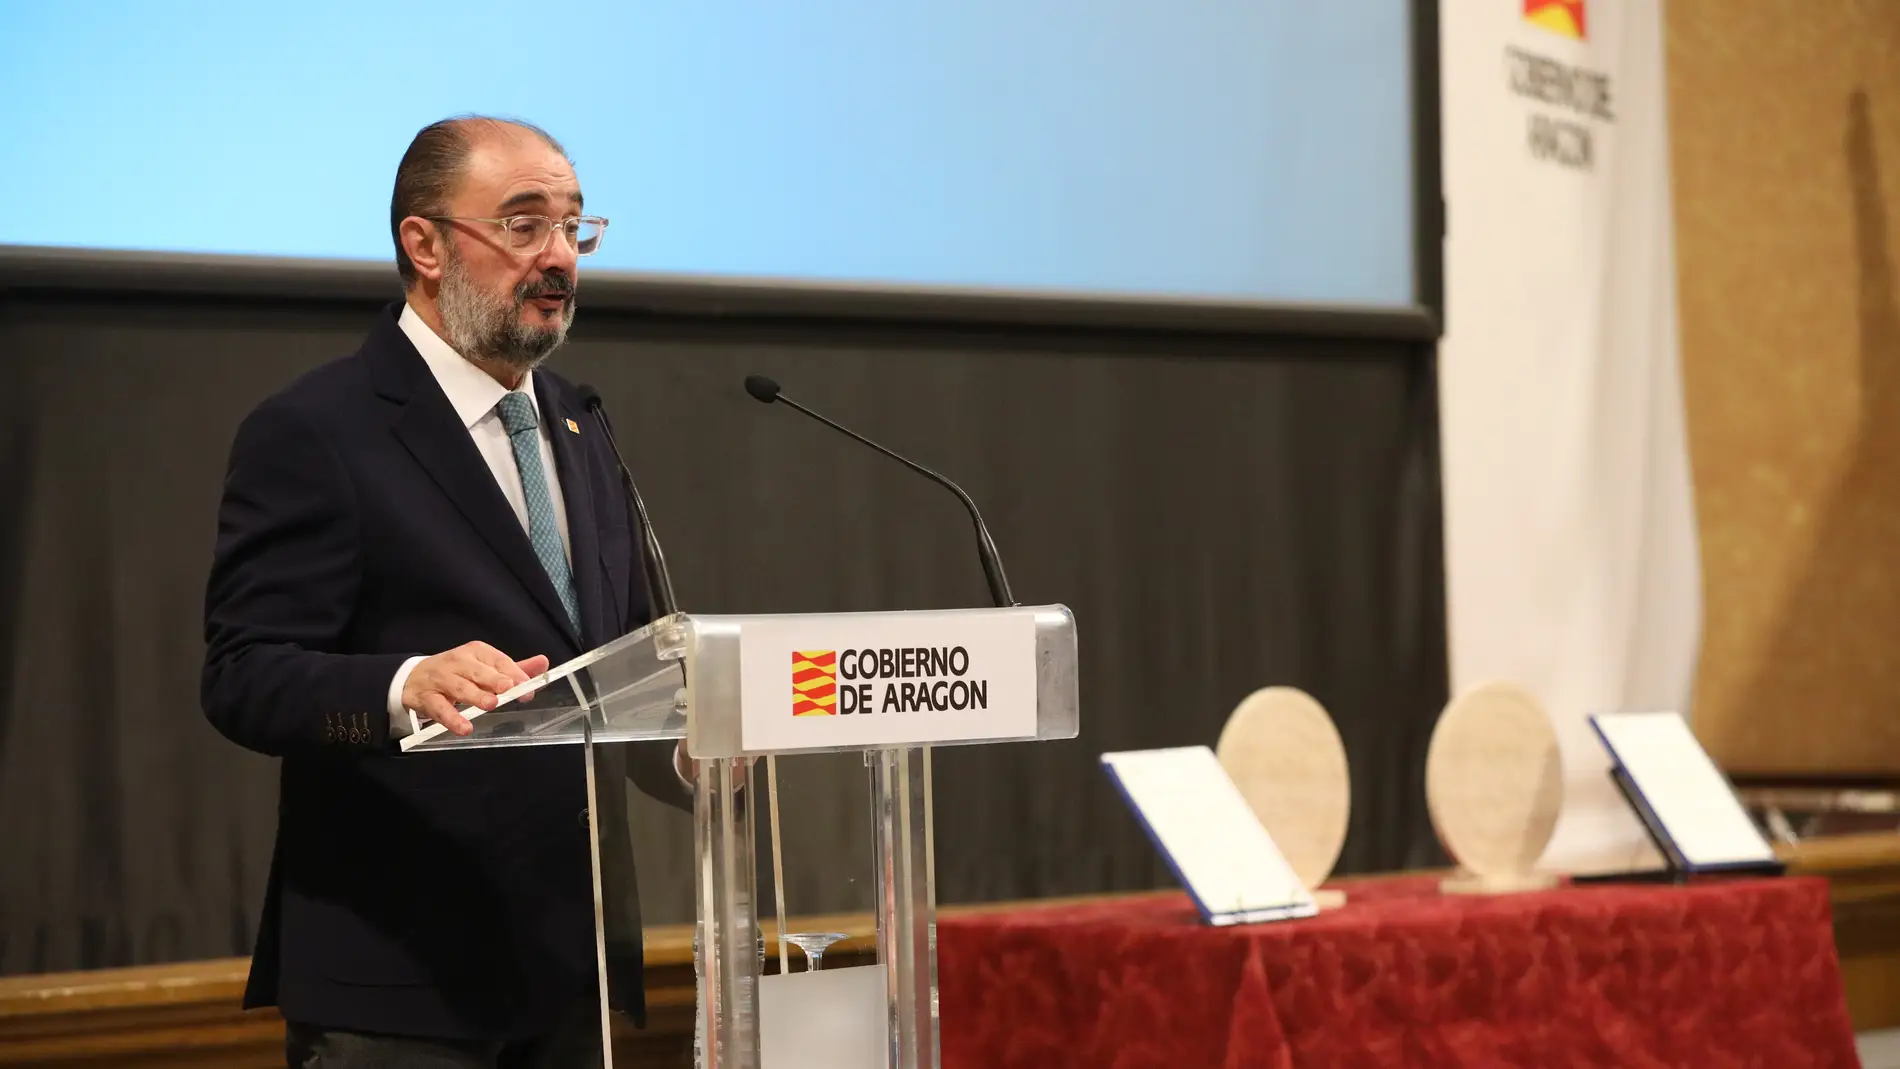 El anuncio lo ha realizado el presidente aragonés, Javier Lambán